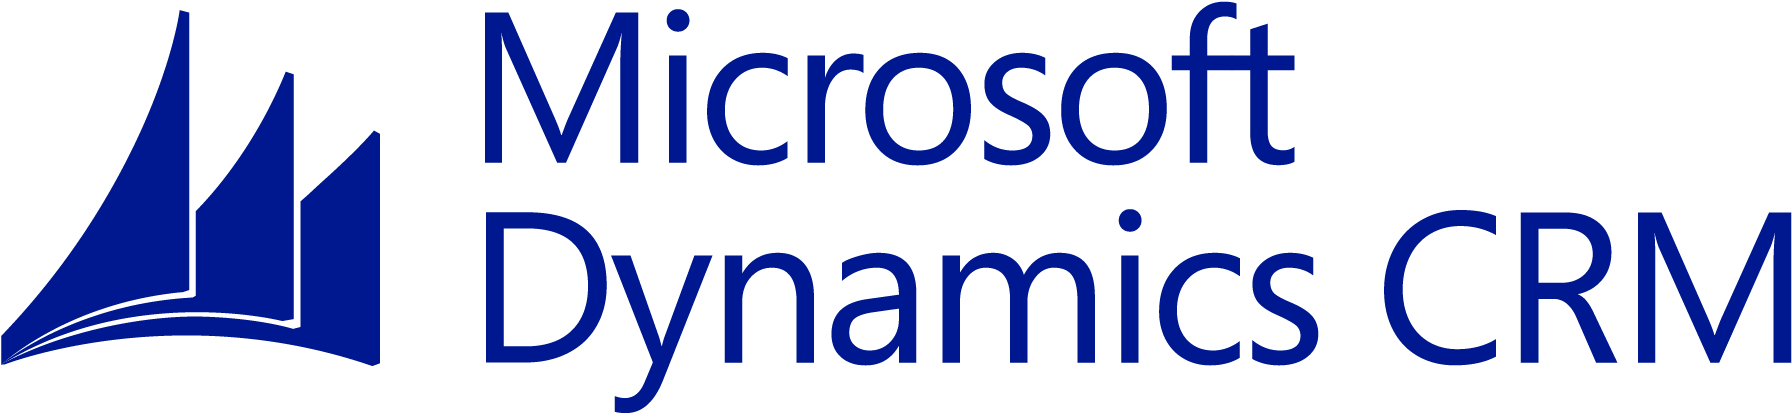 Microsoft Dynamics Crm 2011 Update Rollup - Microsoft Dynamics Crm Logo Png (1813x421)